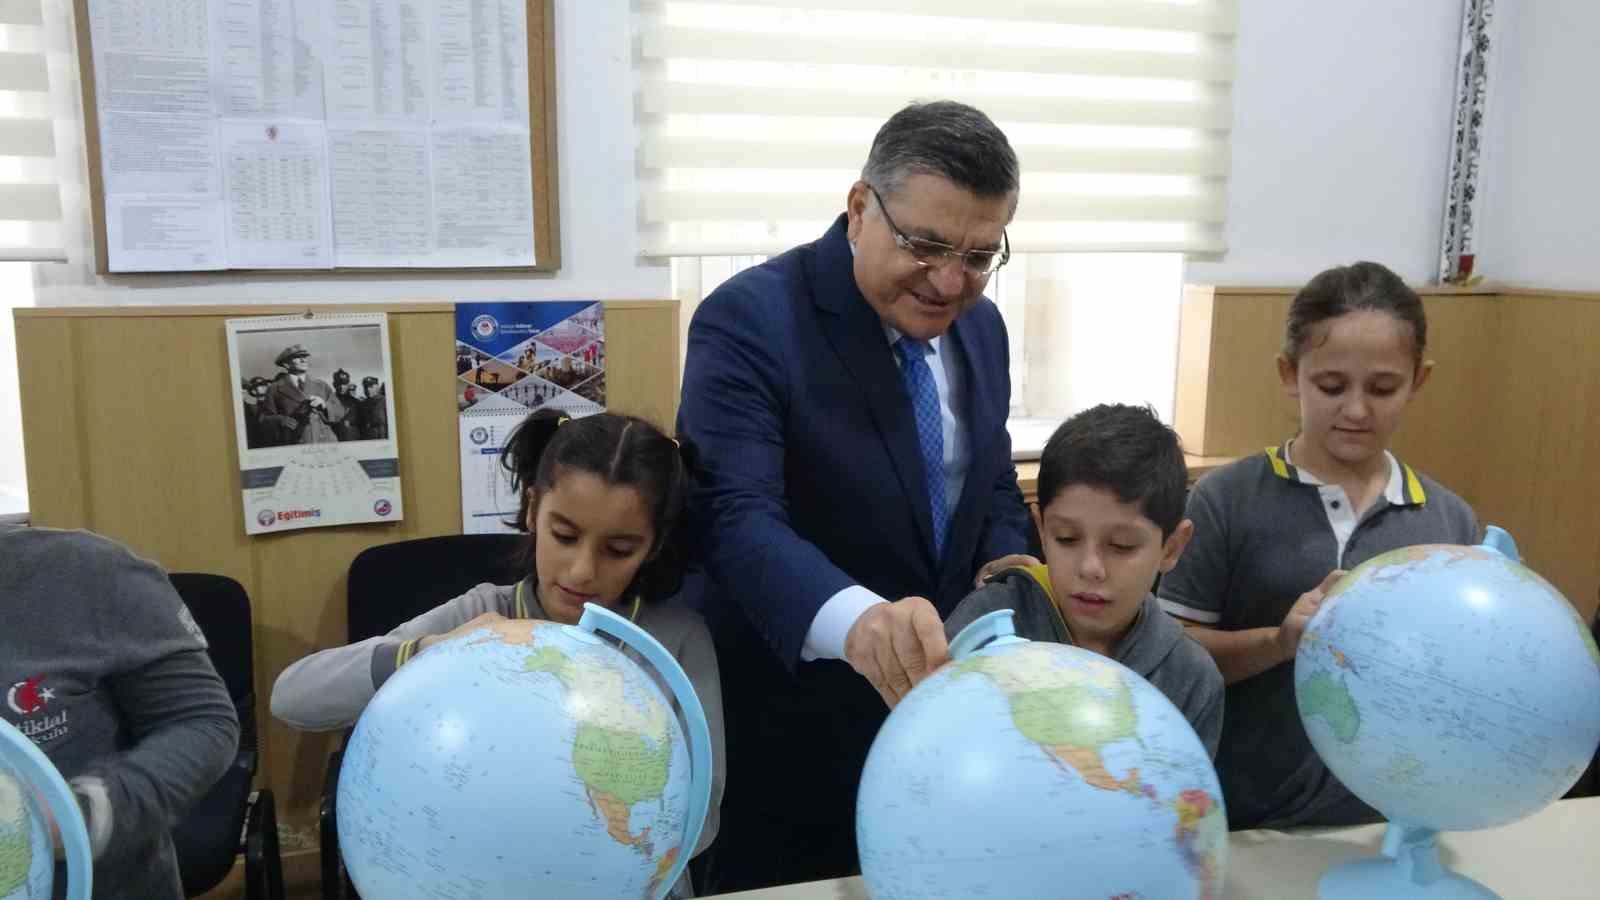 Sinop’ta ilkokul öğrencilerine ‘model küre’ hediye edildi
